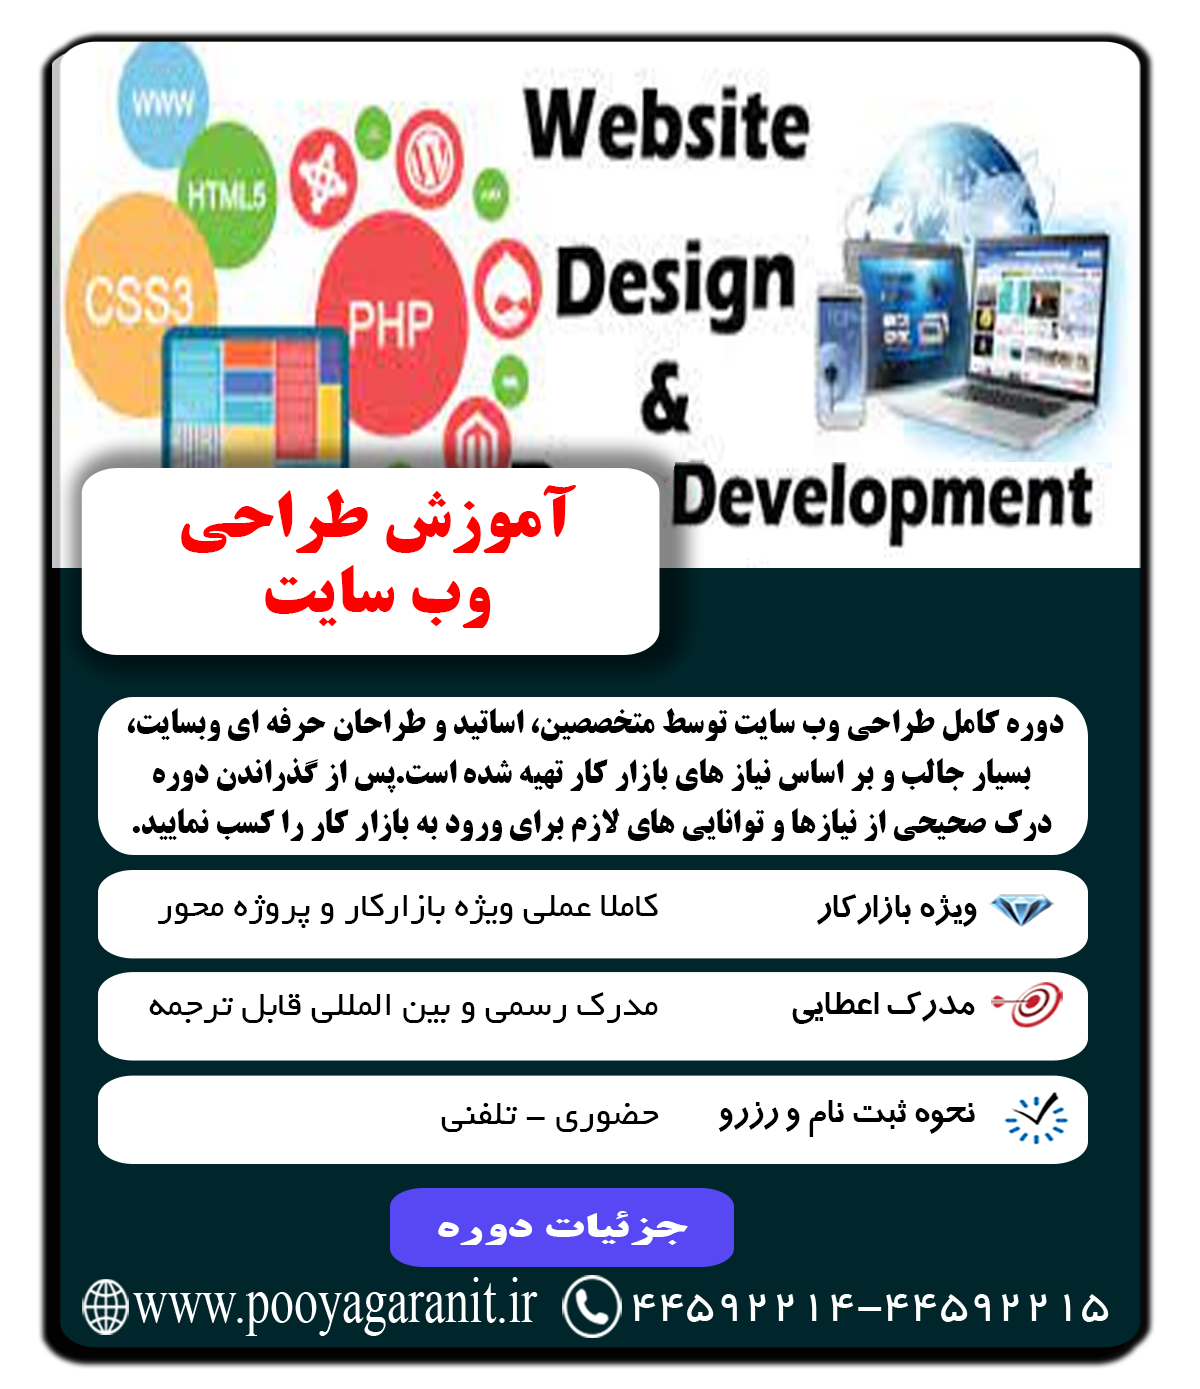 Web site